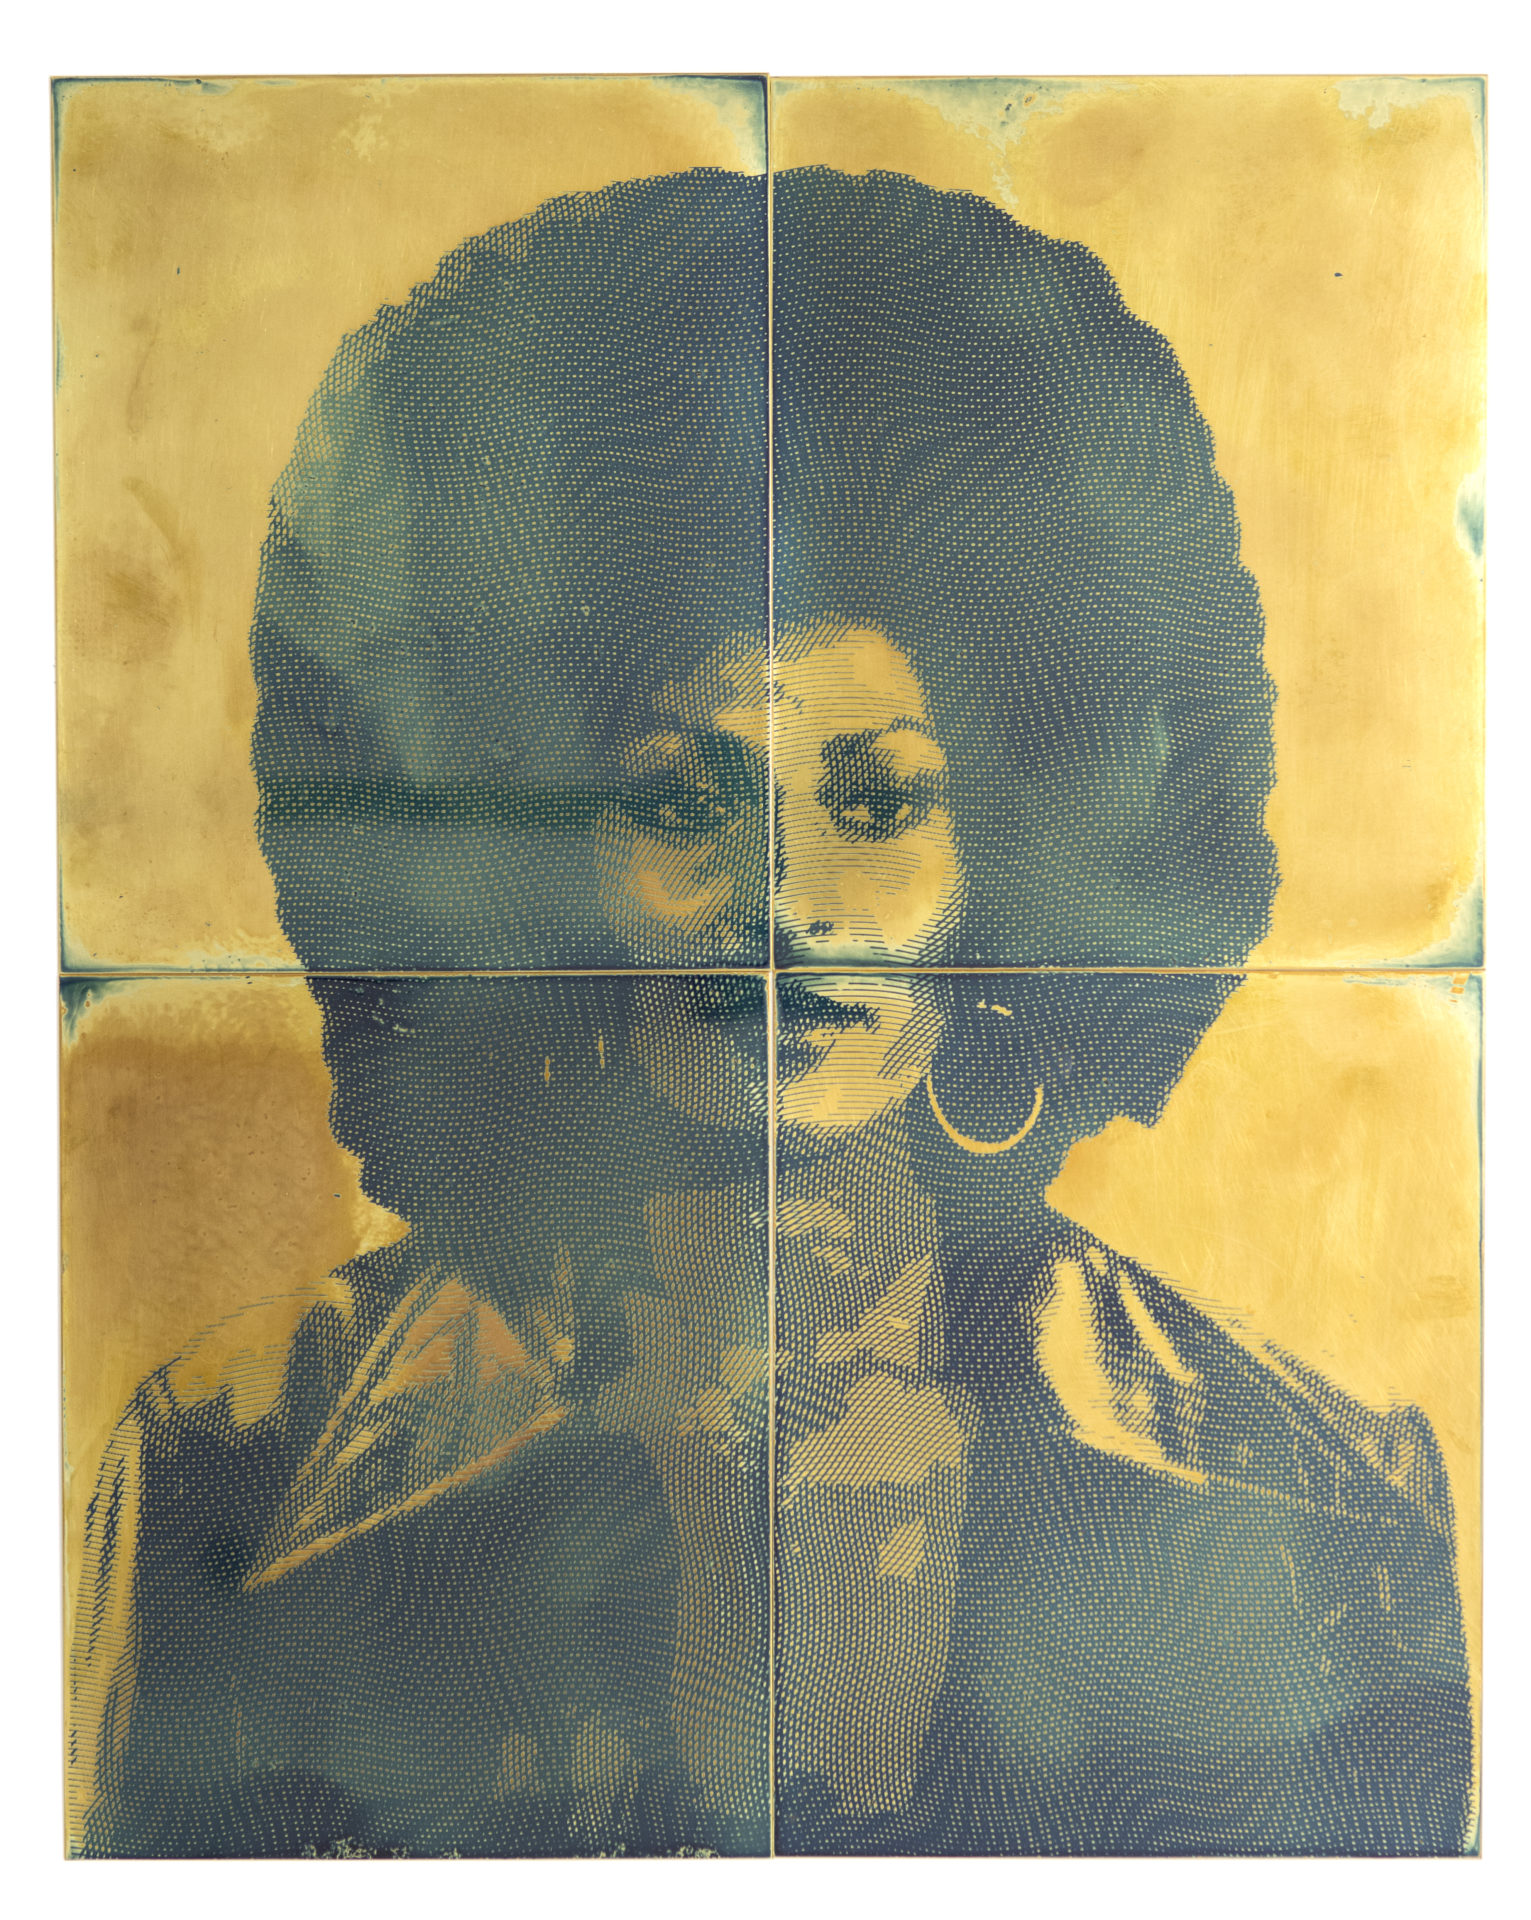 Blaxpotation: Pam Grier, émulsion photosensible sur laiton, 38 x 48 cm, 2018